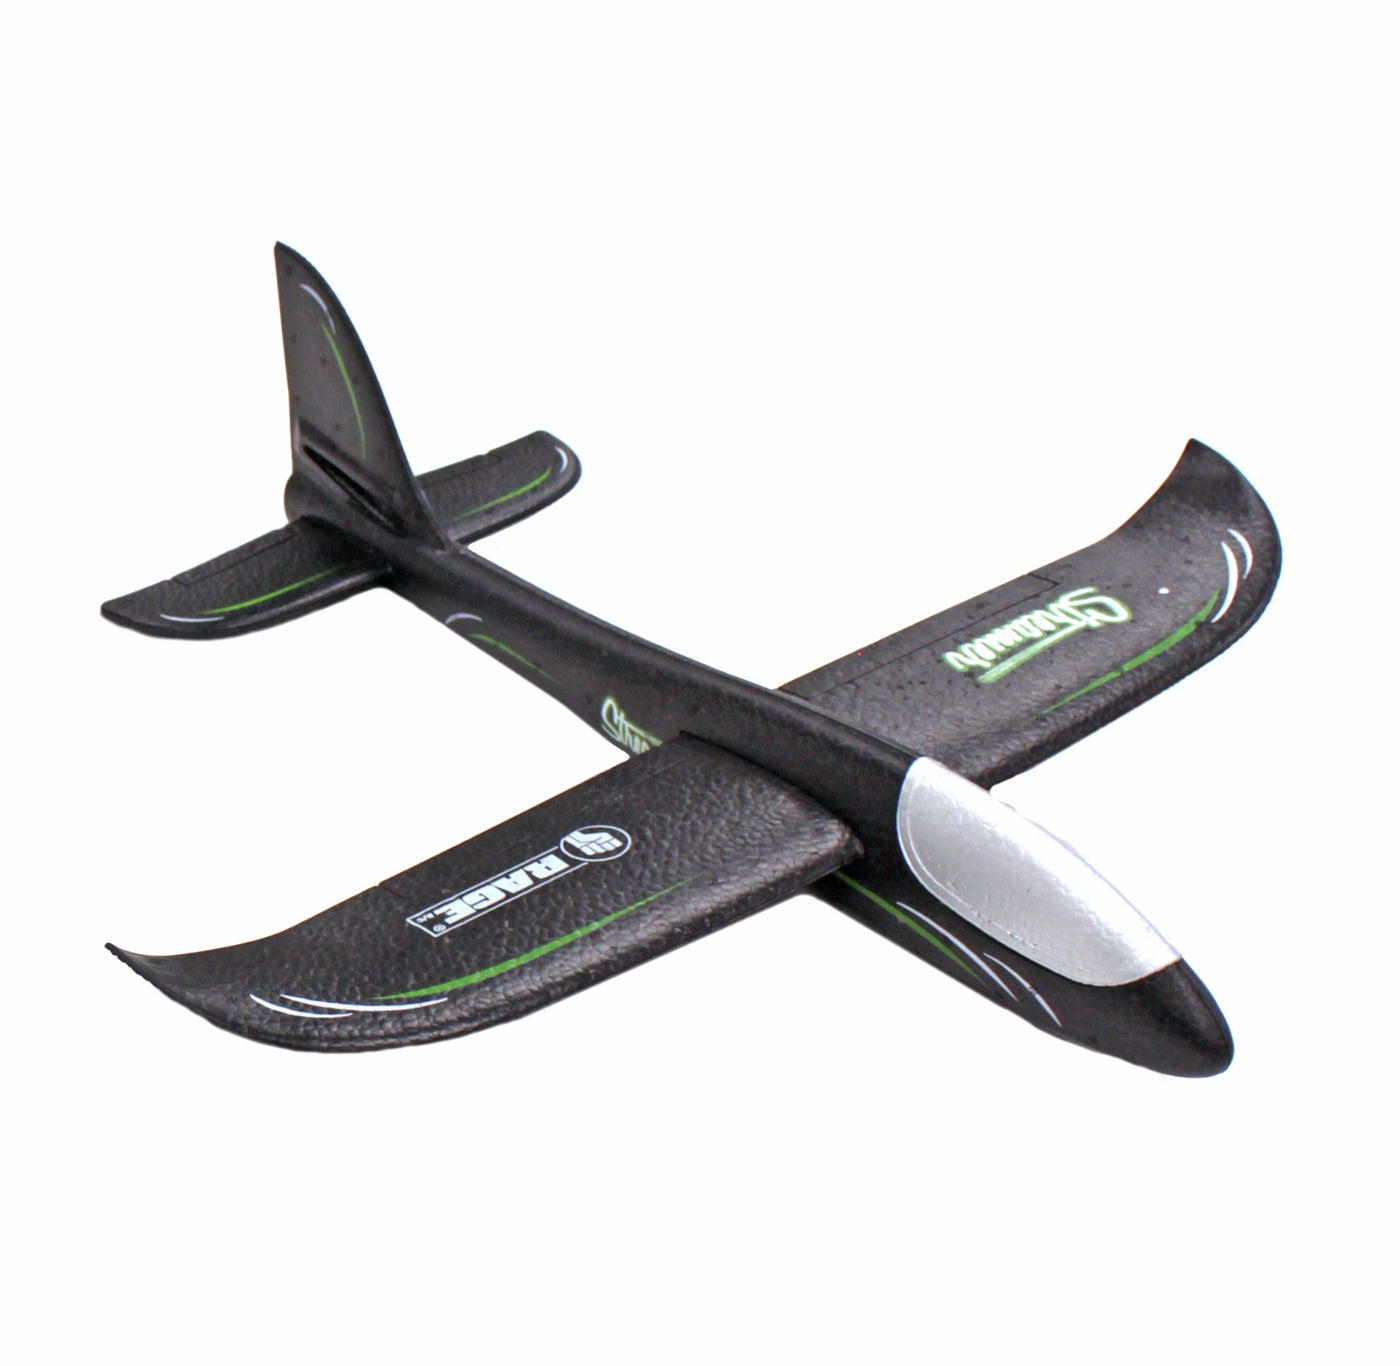 Streamer Hand Launch Glider